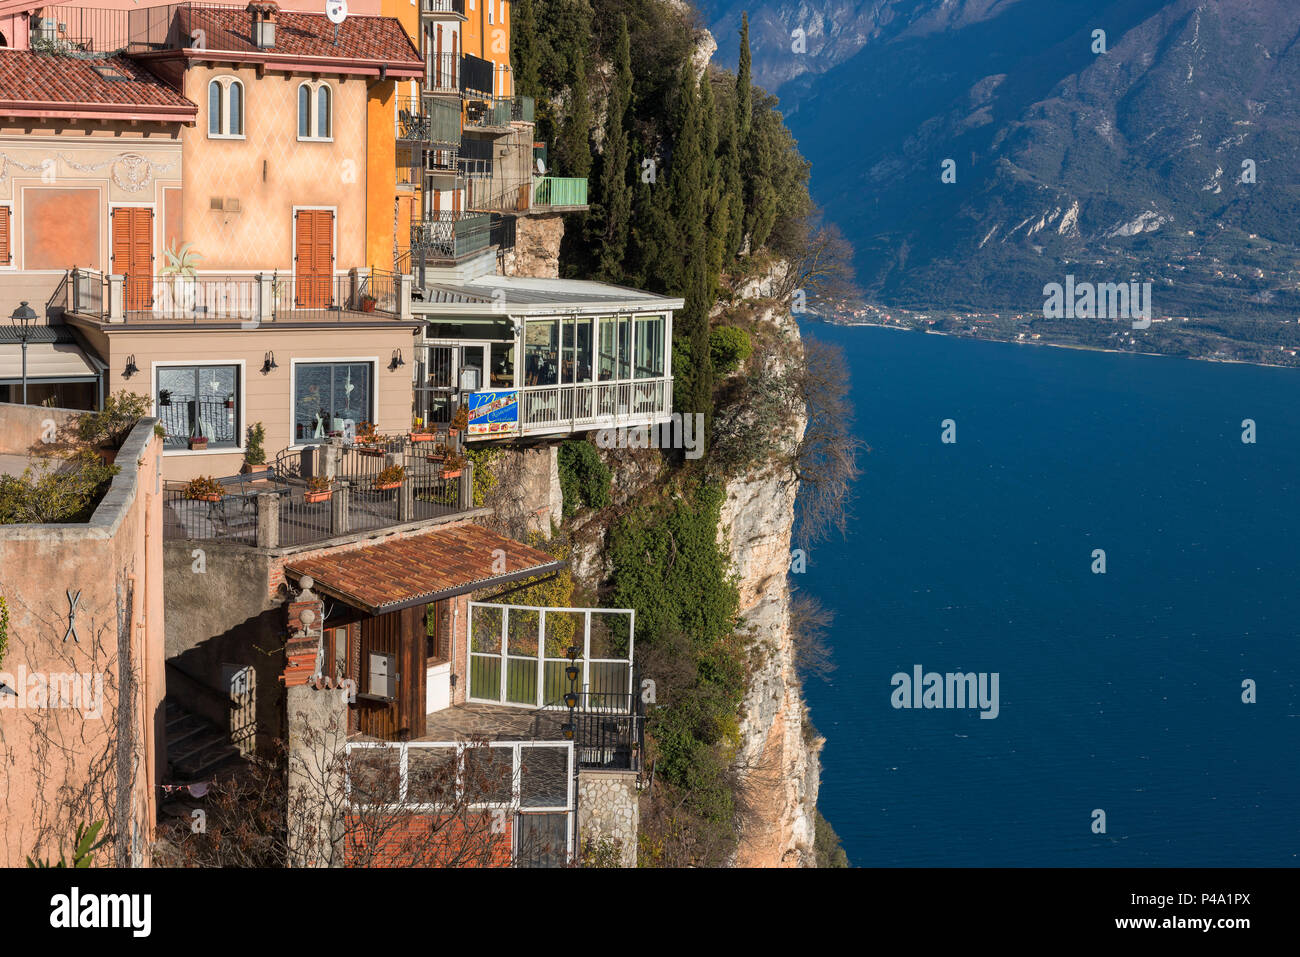 Pieve villaggio sul lago di Garda in Europa, Lombardia, Brescia, Pieve, Tremosine Foto Stock